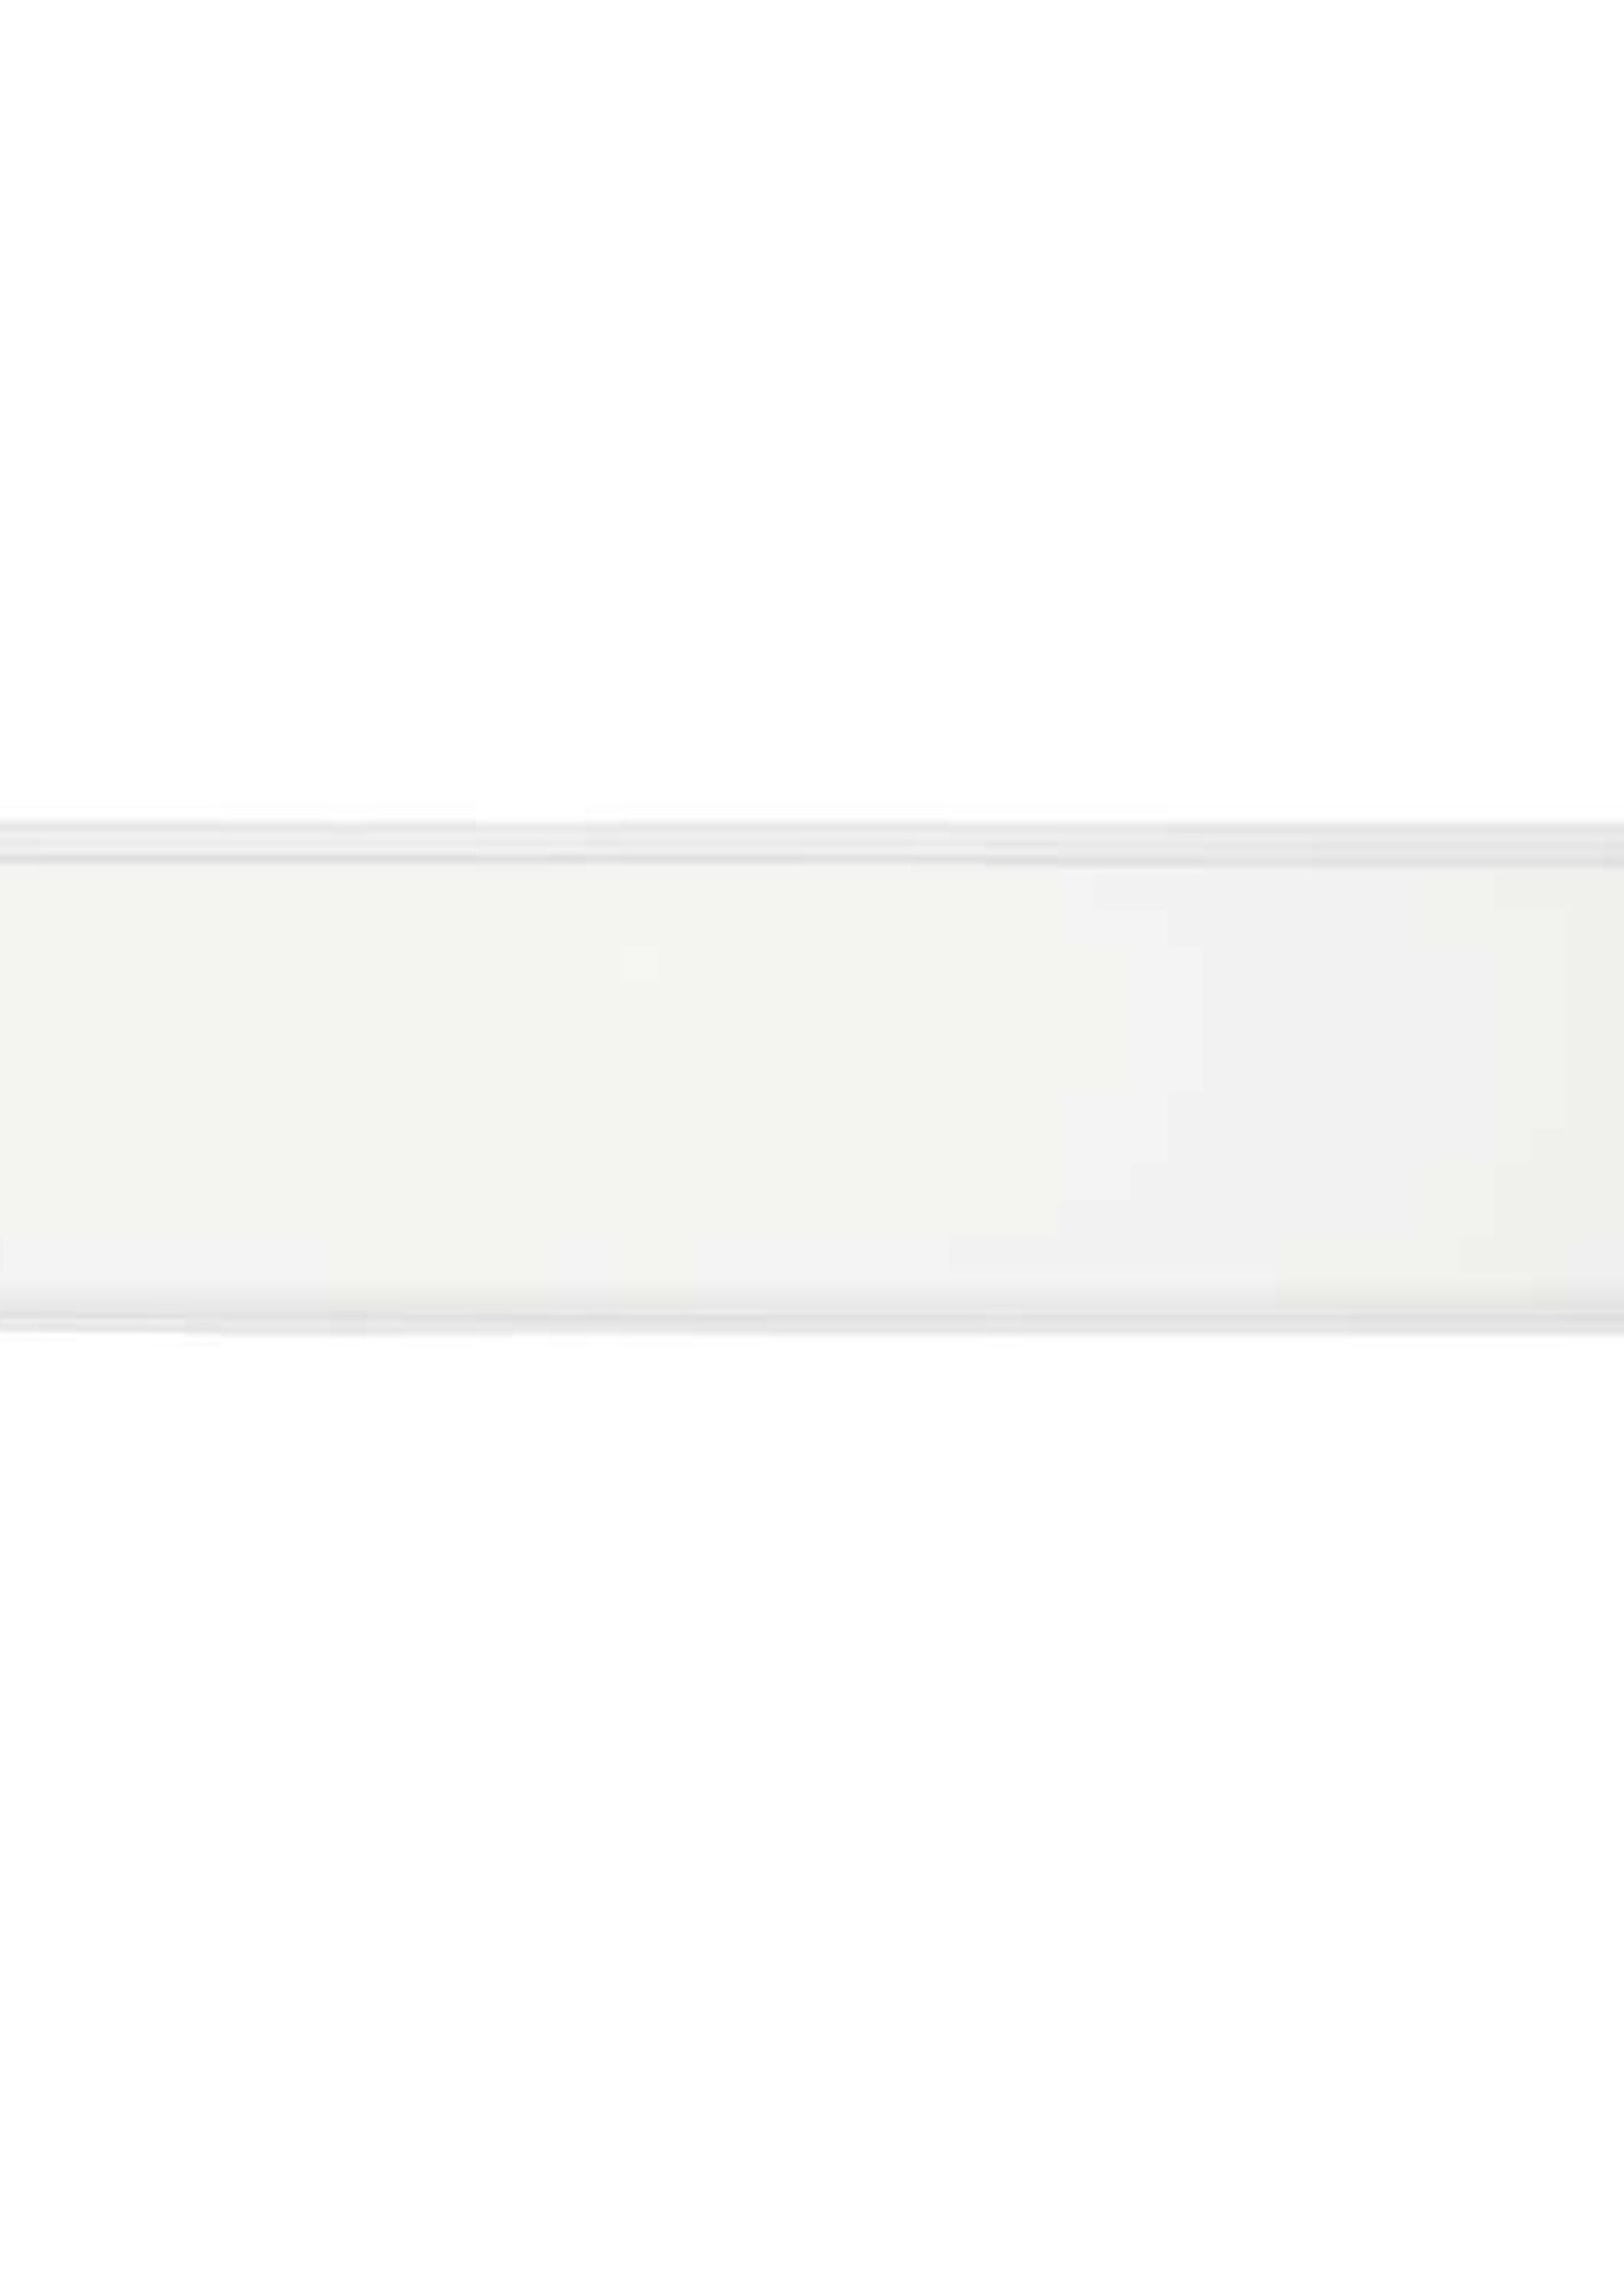 LEDWINKEL-Online WiFi LED Paneel 30x120cm CCT 3000K - 6000K 50W 100lm/W Edge-lit